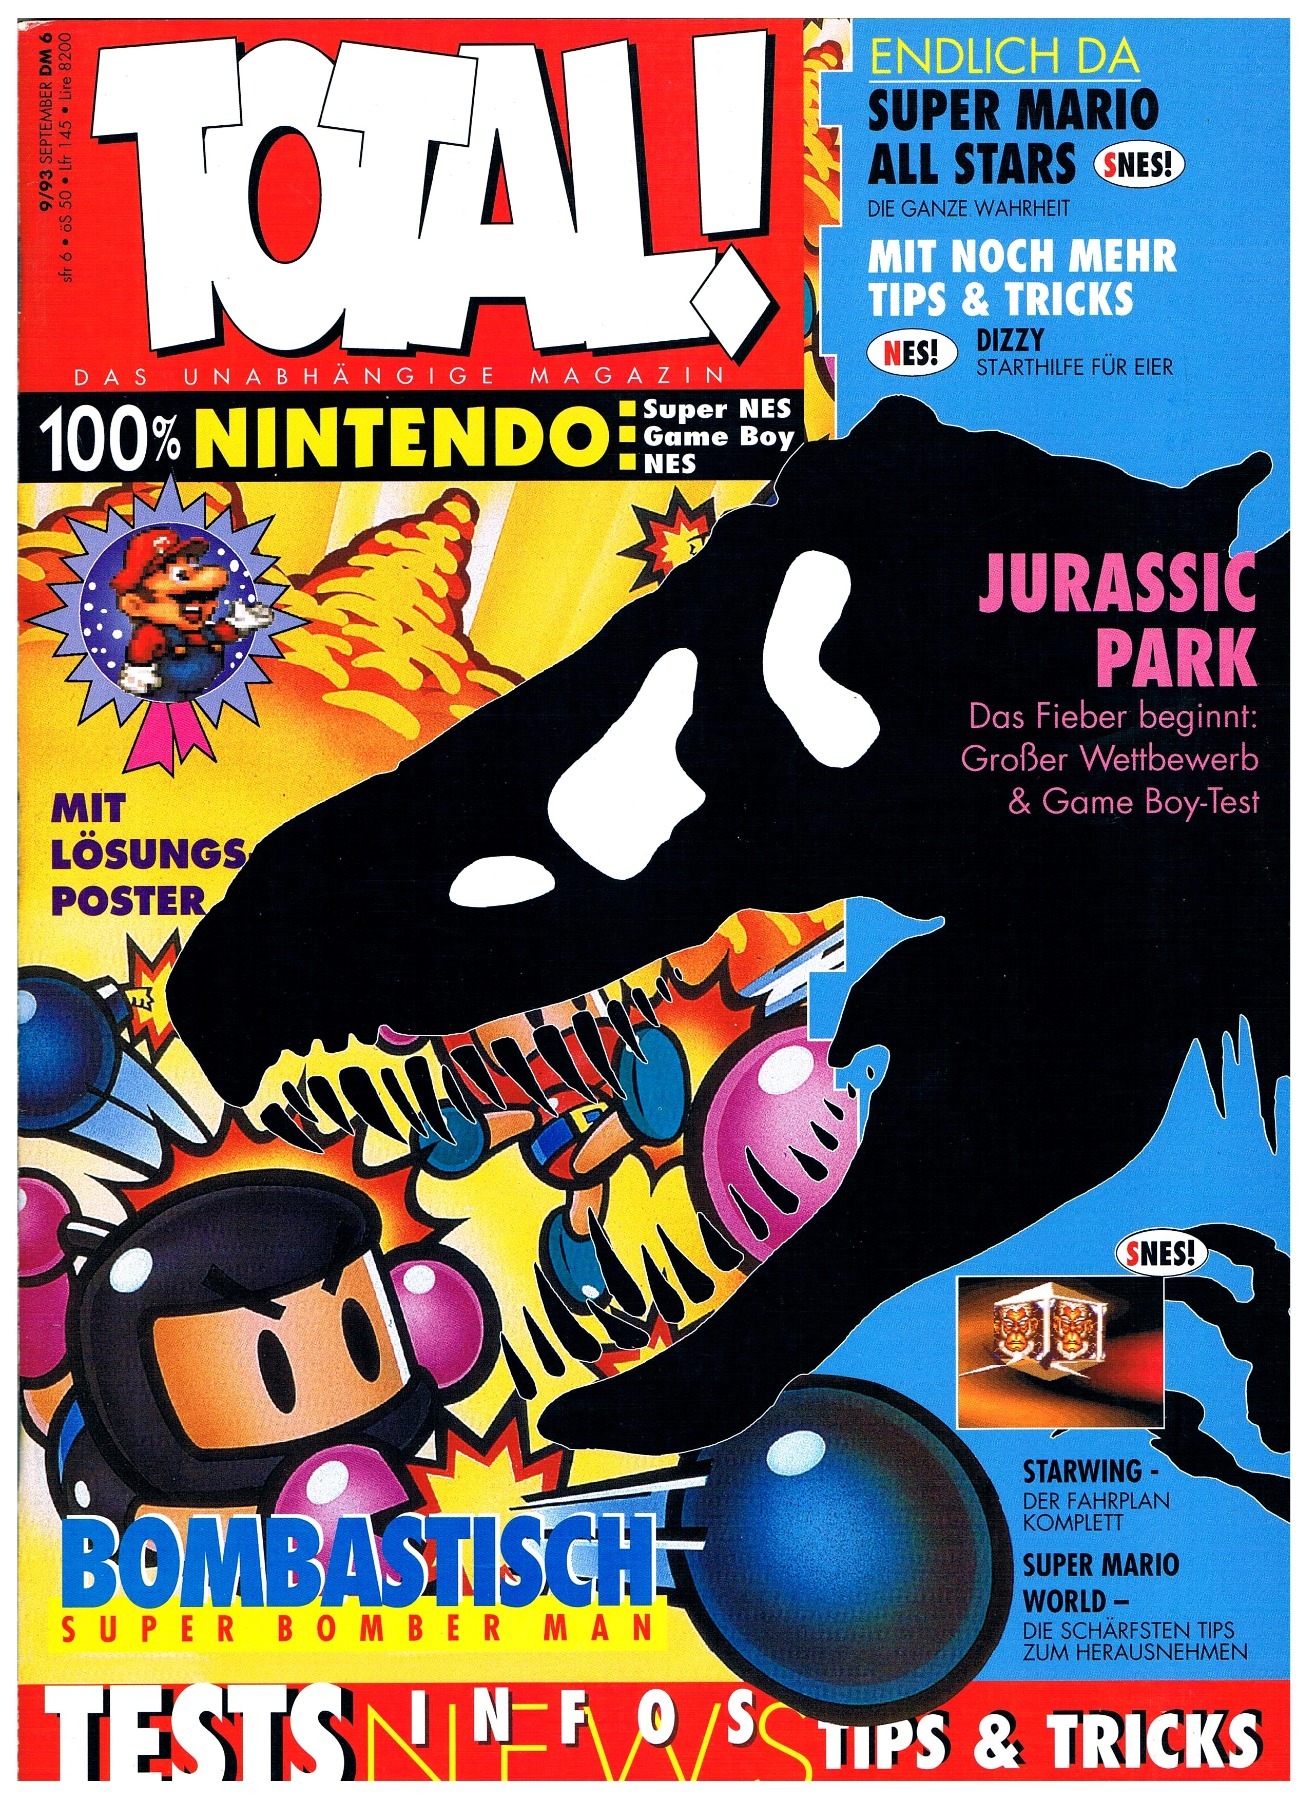 TOTAL Das unabhängige Magazin - 100 Nintendo - Ausgabe 9/93 1993